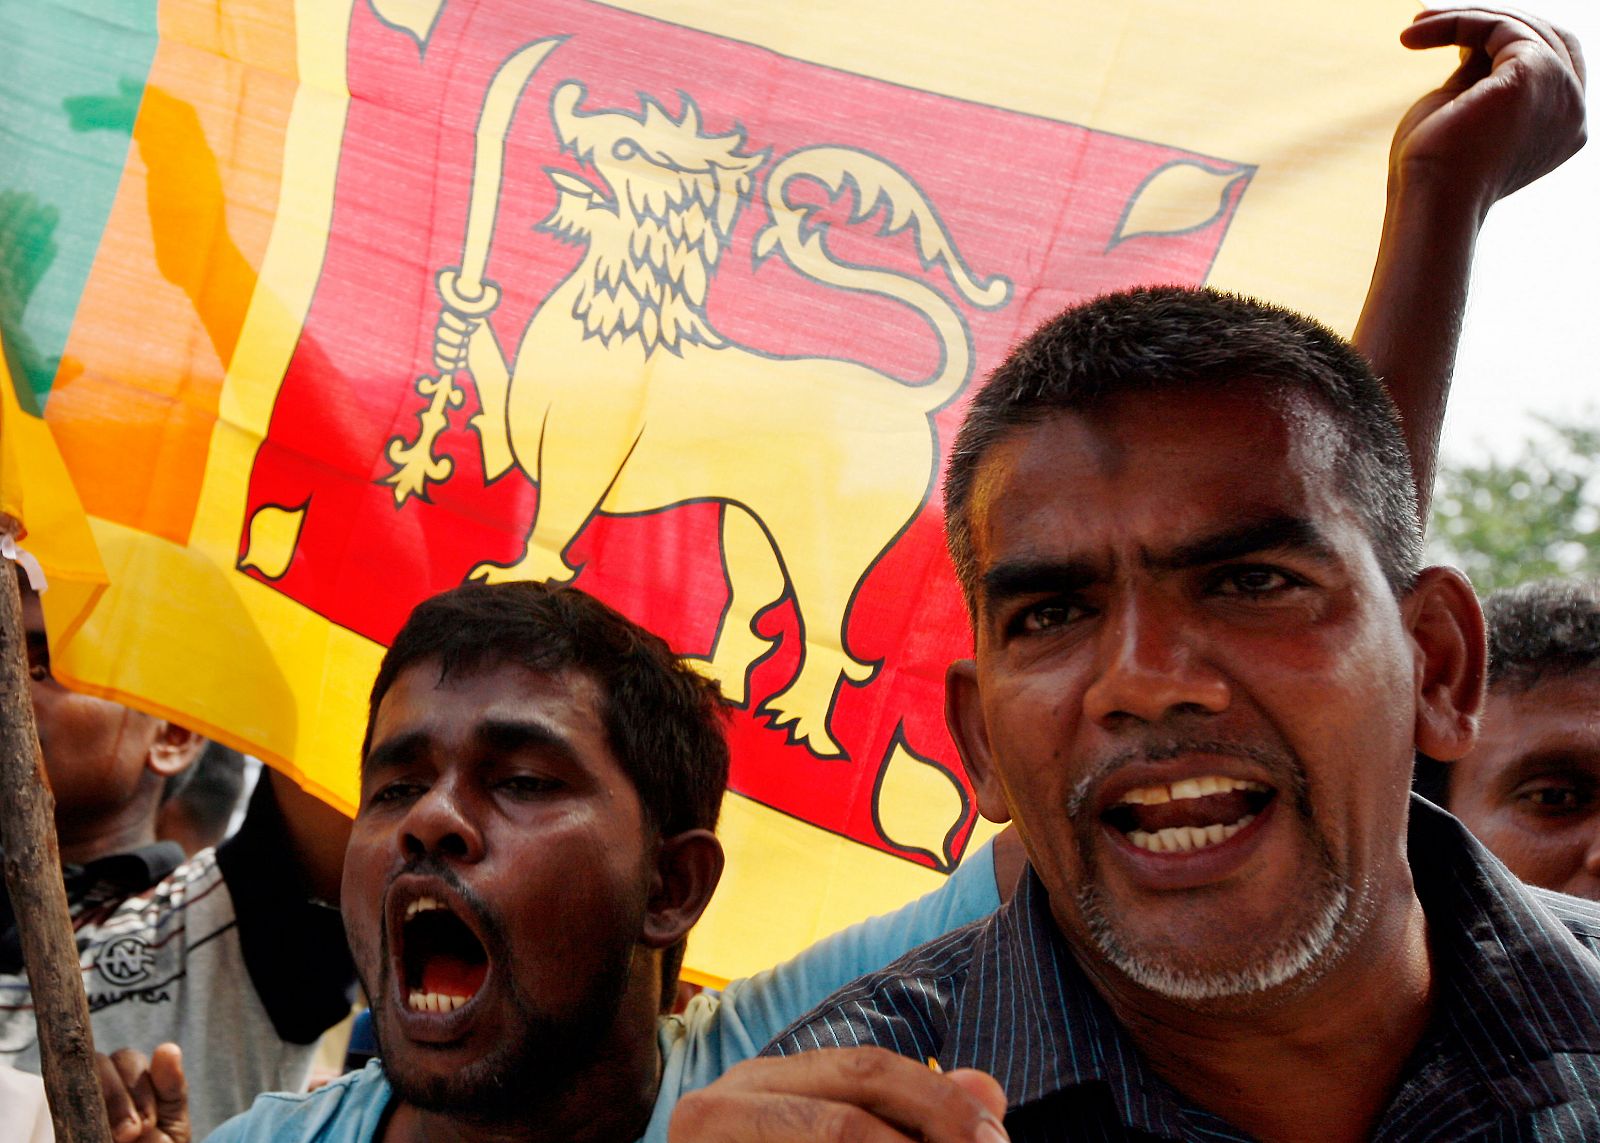 Guerrilla tamil: "Hemos decidido silenciar nuestras armas"